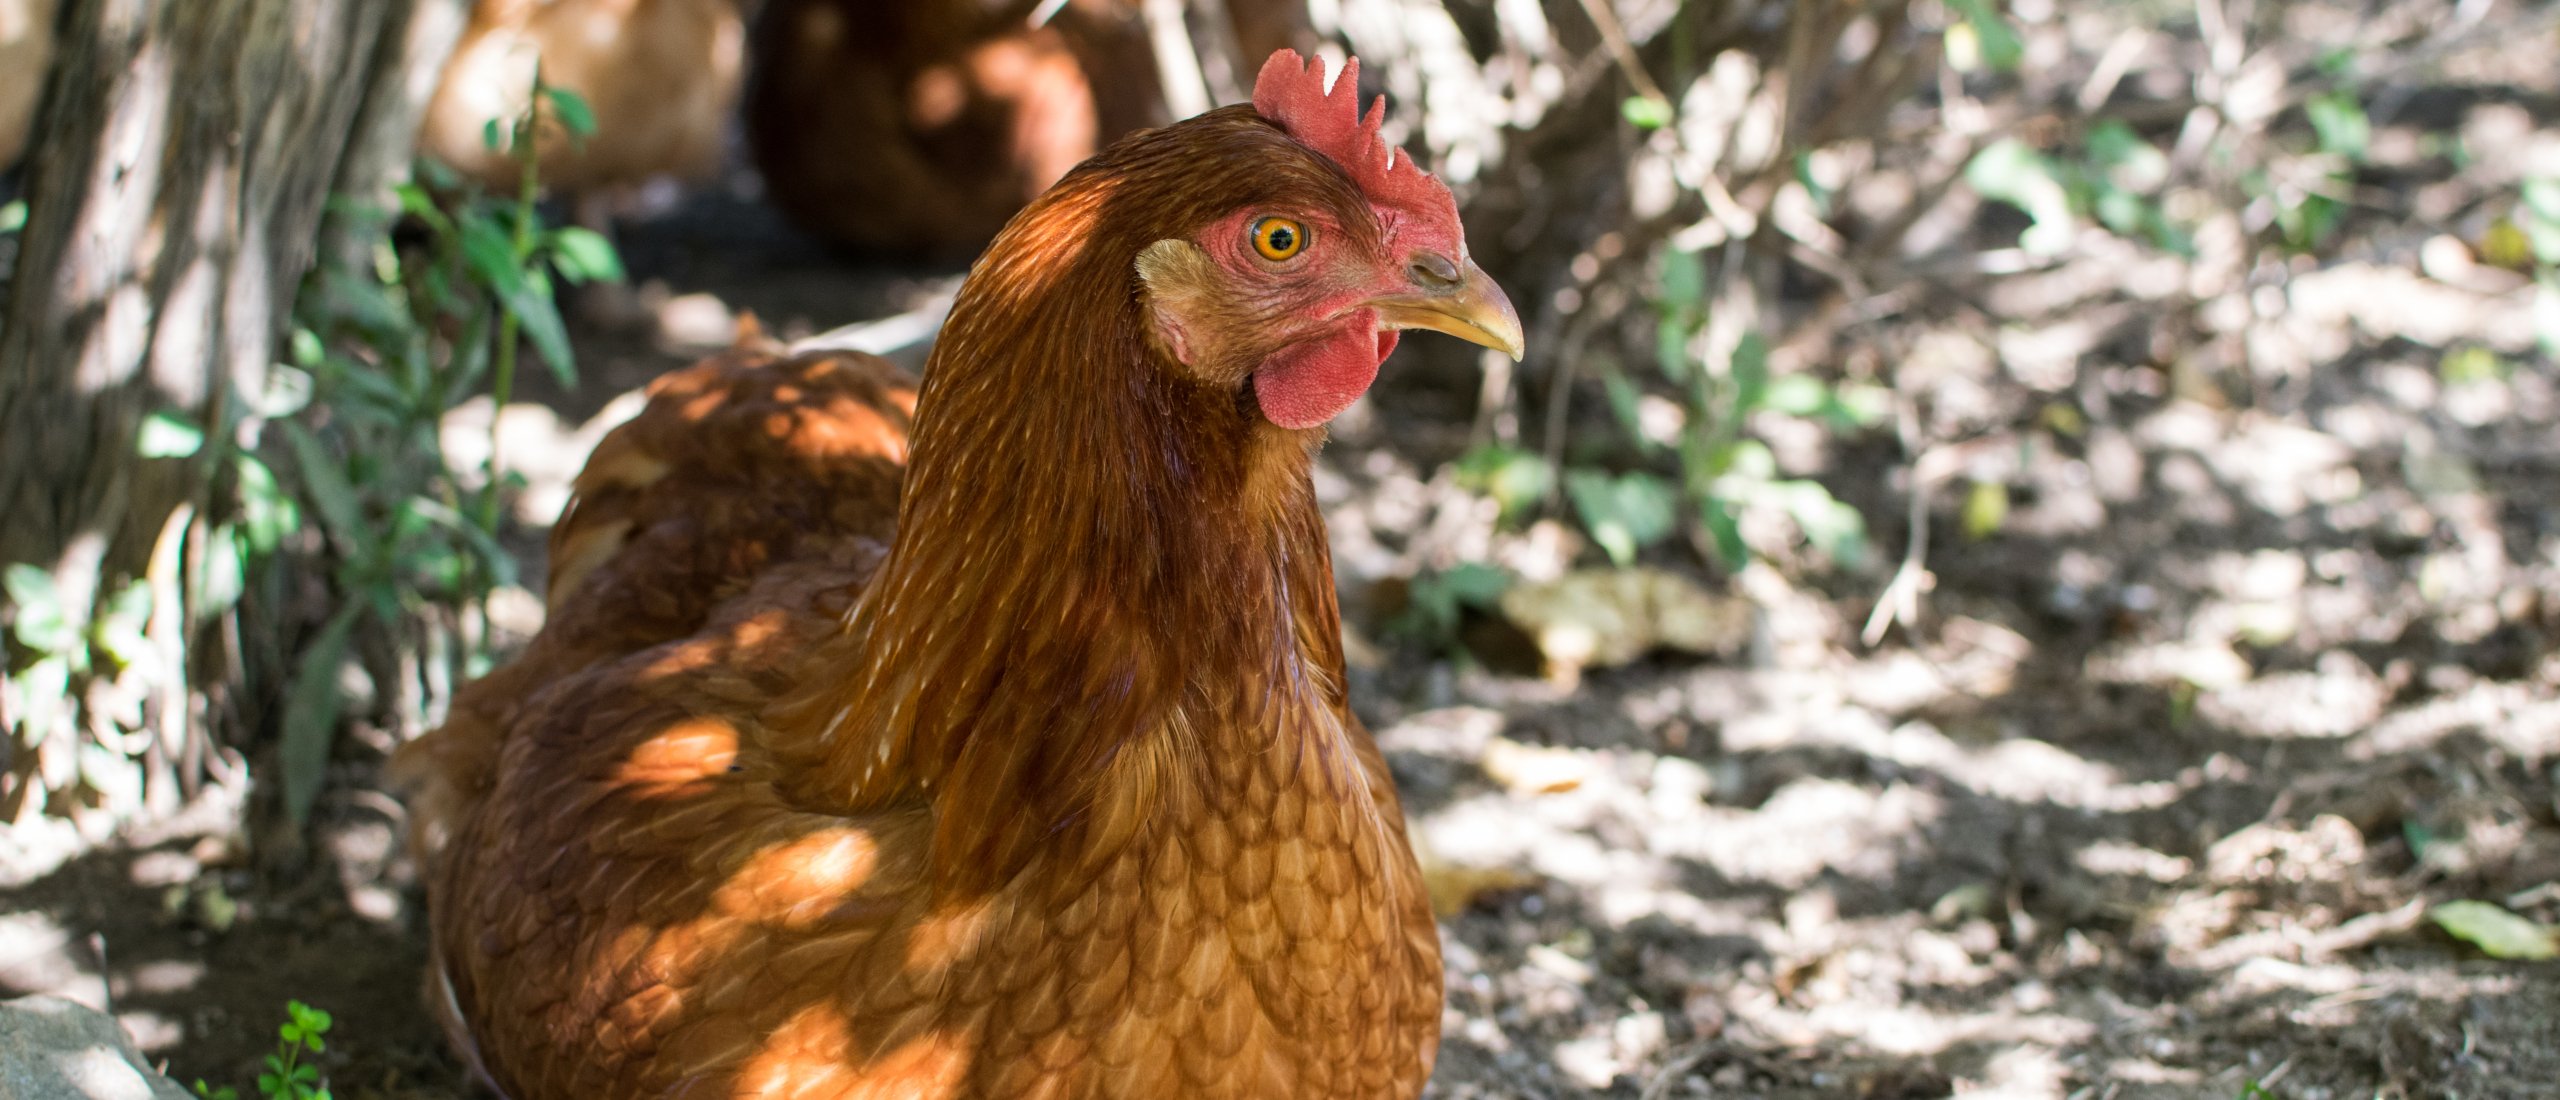 slijm Mooi Tegenstrijdigheid Waarom gaan mijn kippen niet op stok? | Kippenhok | Kippen verzorgen |  Blogs | Kippenpakket.nl